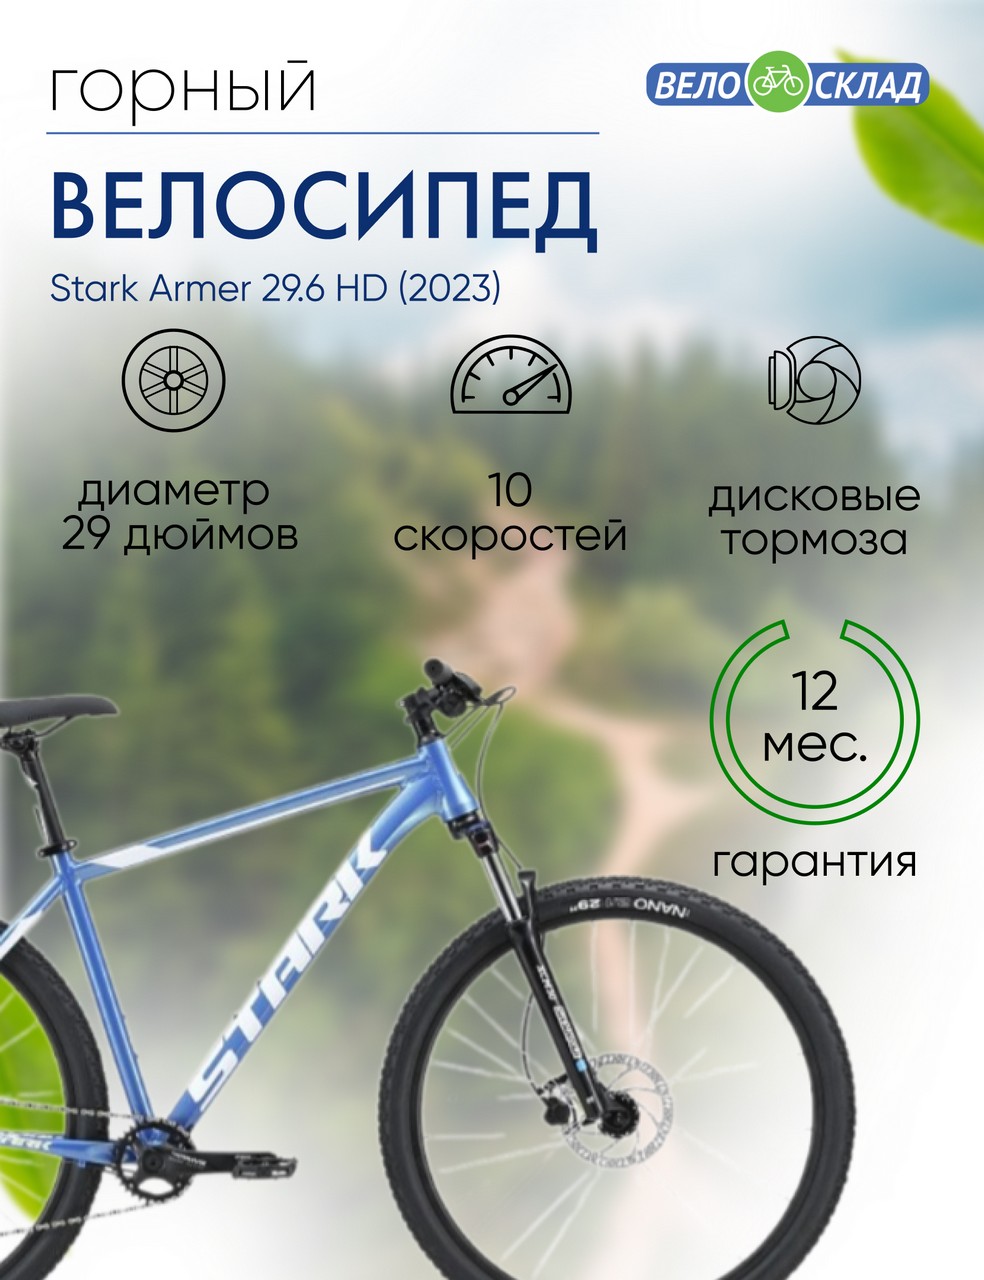 Горный велосипед Stark Armer 29.6 HD, год 2023, цвет Голубой-Белый, ростовка 18